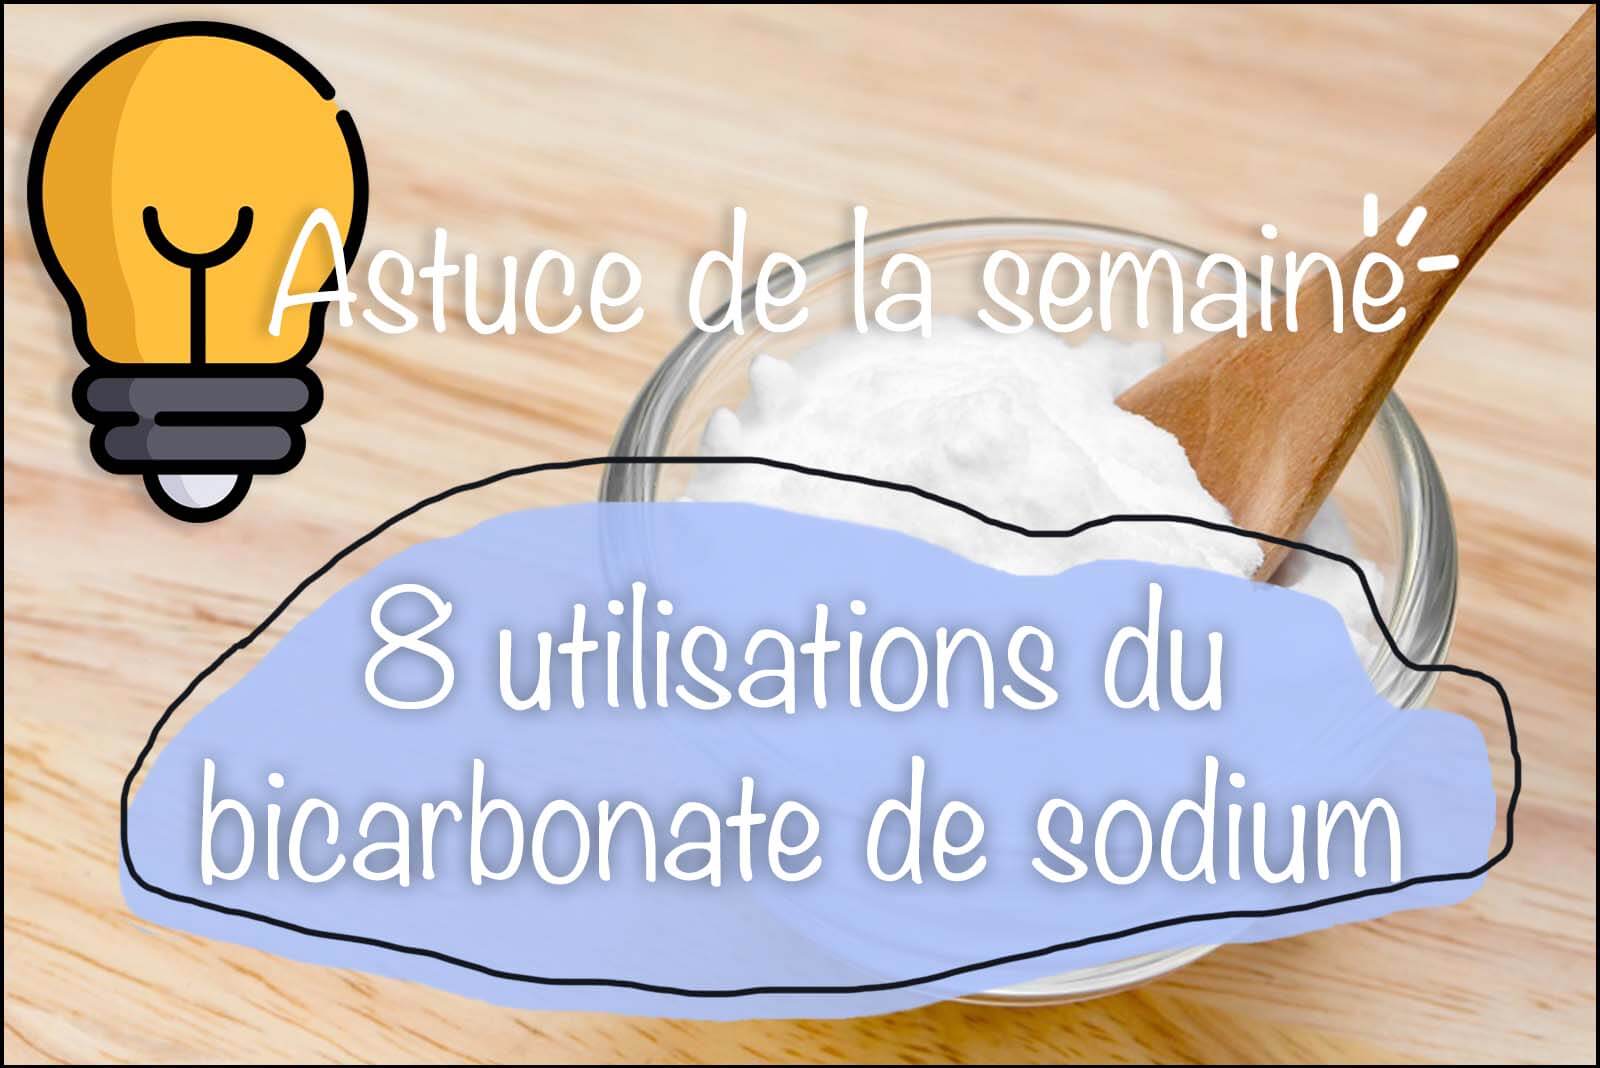 NettService: 8 utilisations du bicarbonate de sodium